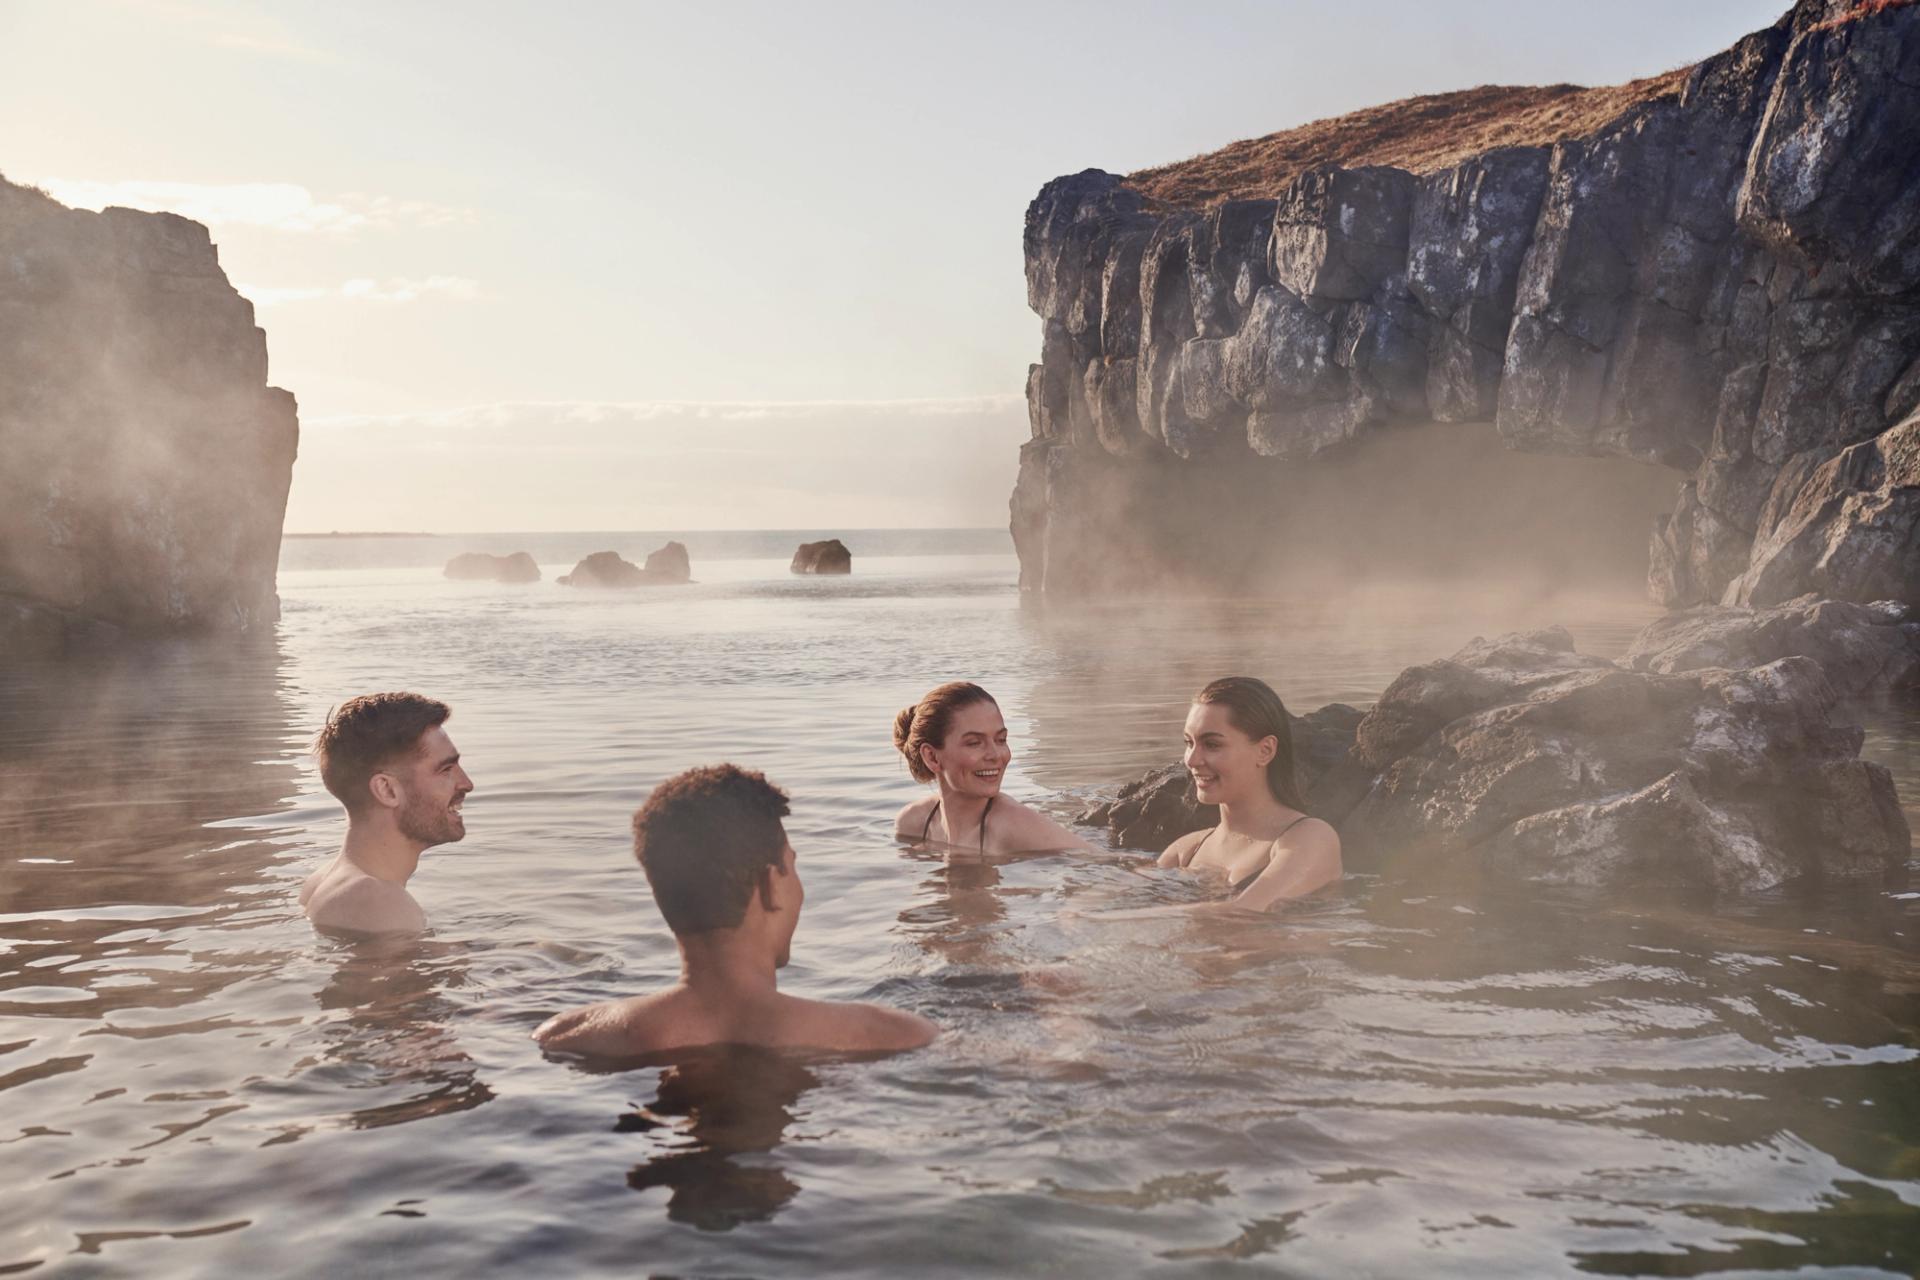 Sky Lagoon, a Geothermal pool in Reykjavik Iceland